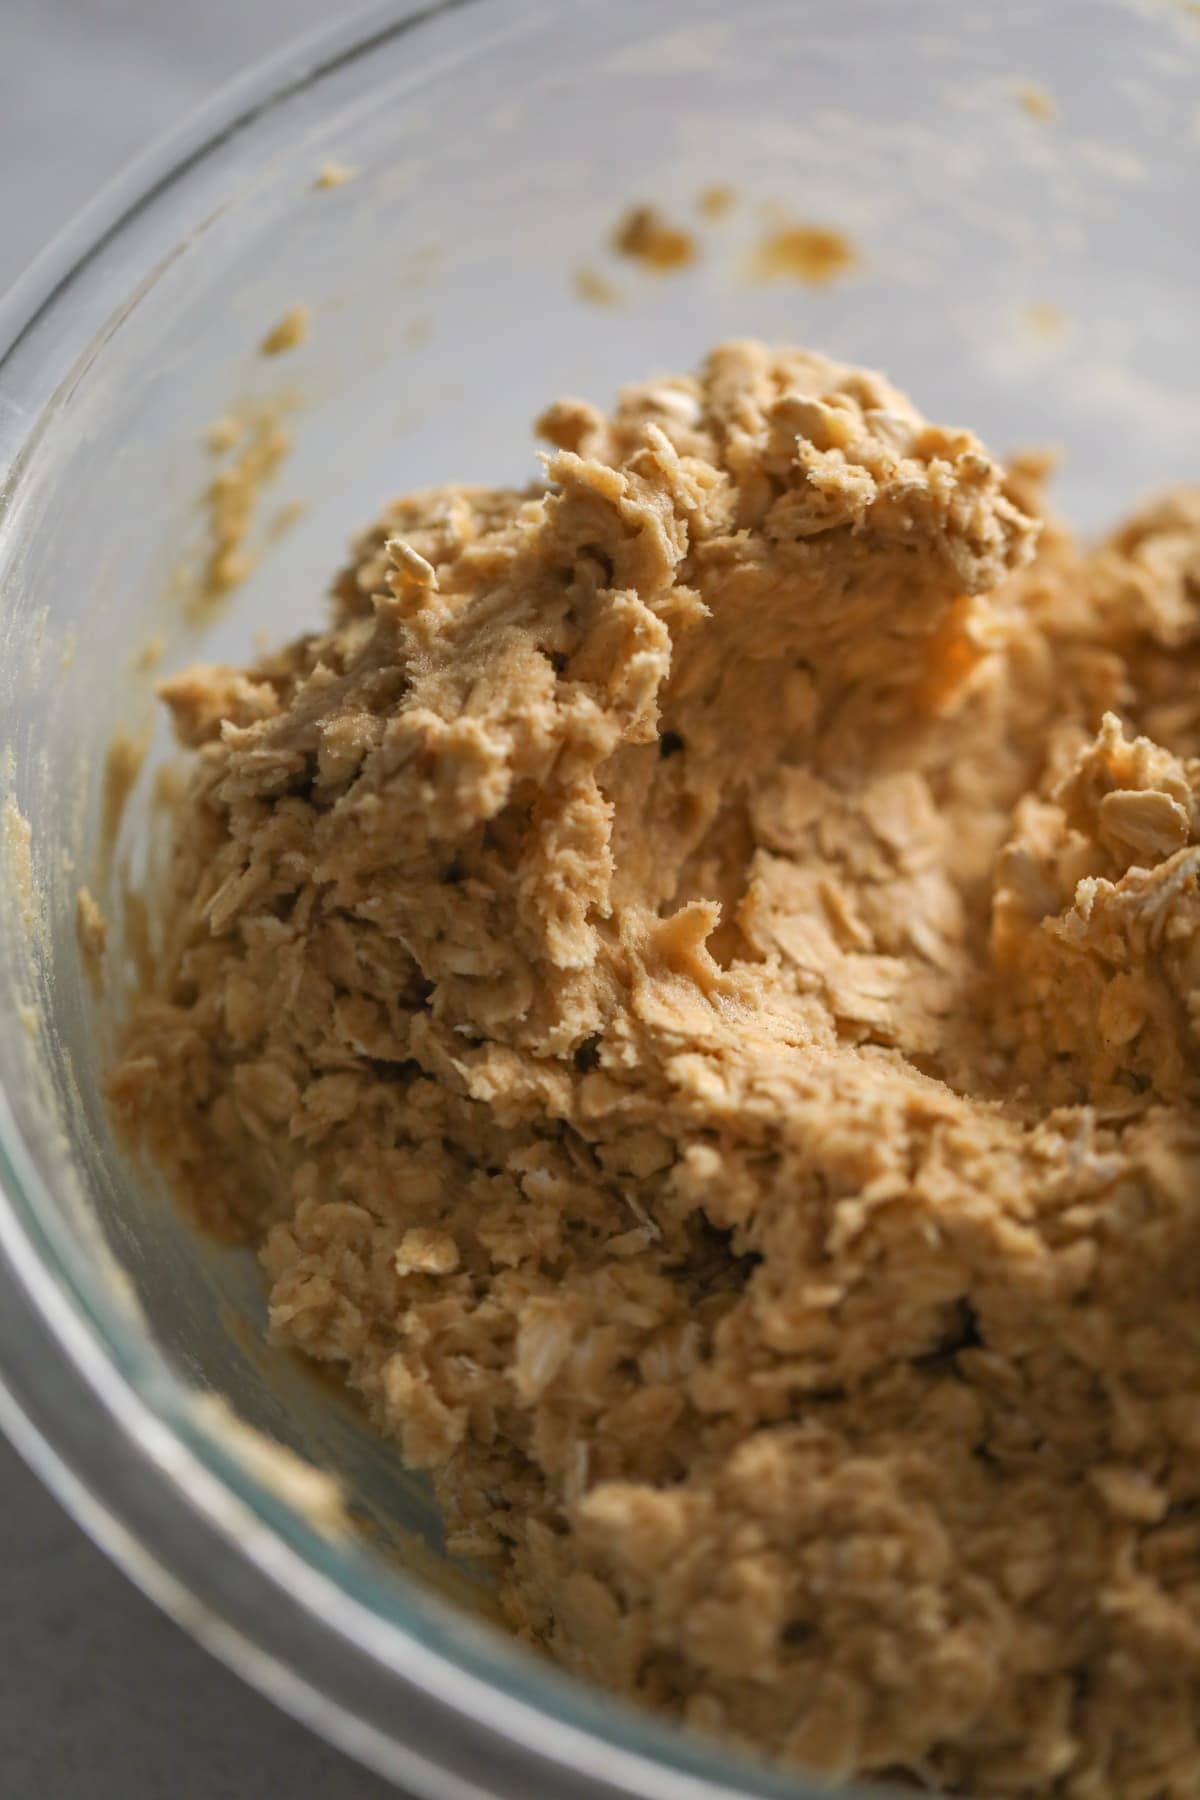 How to Make Oatmeal Cookies